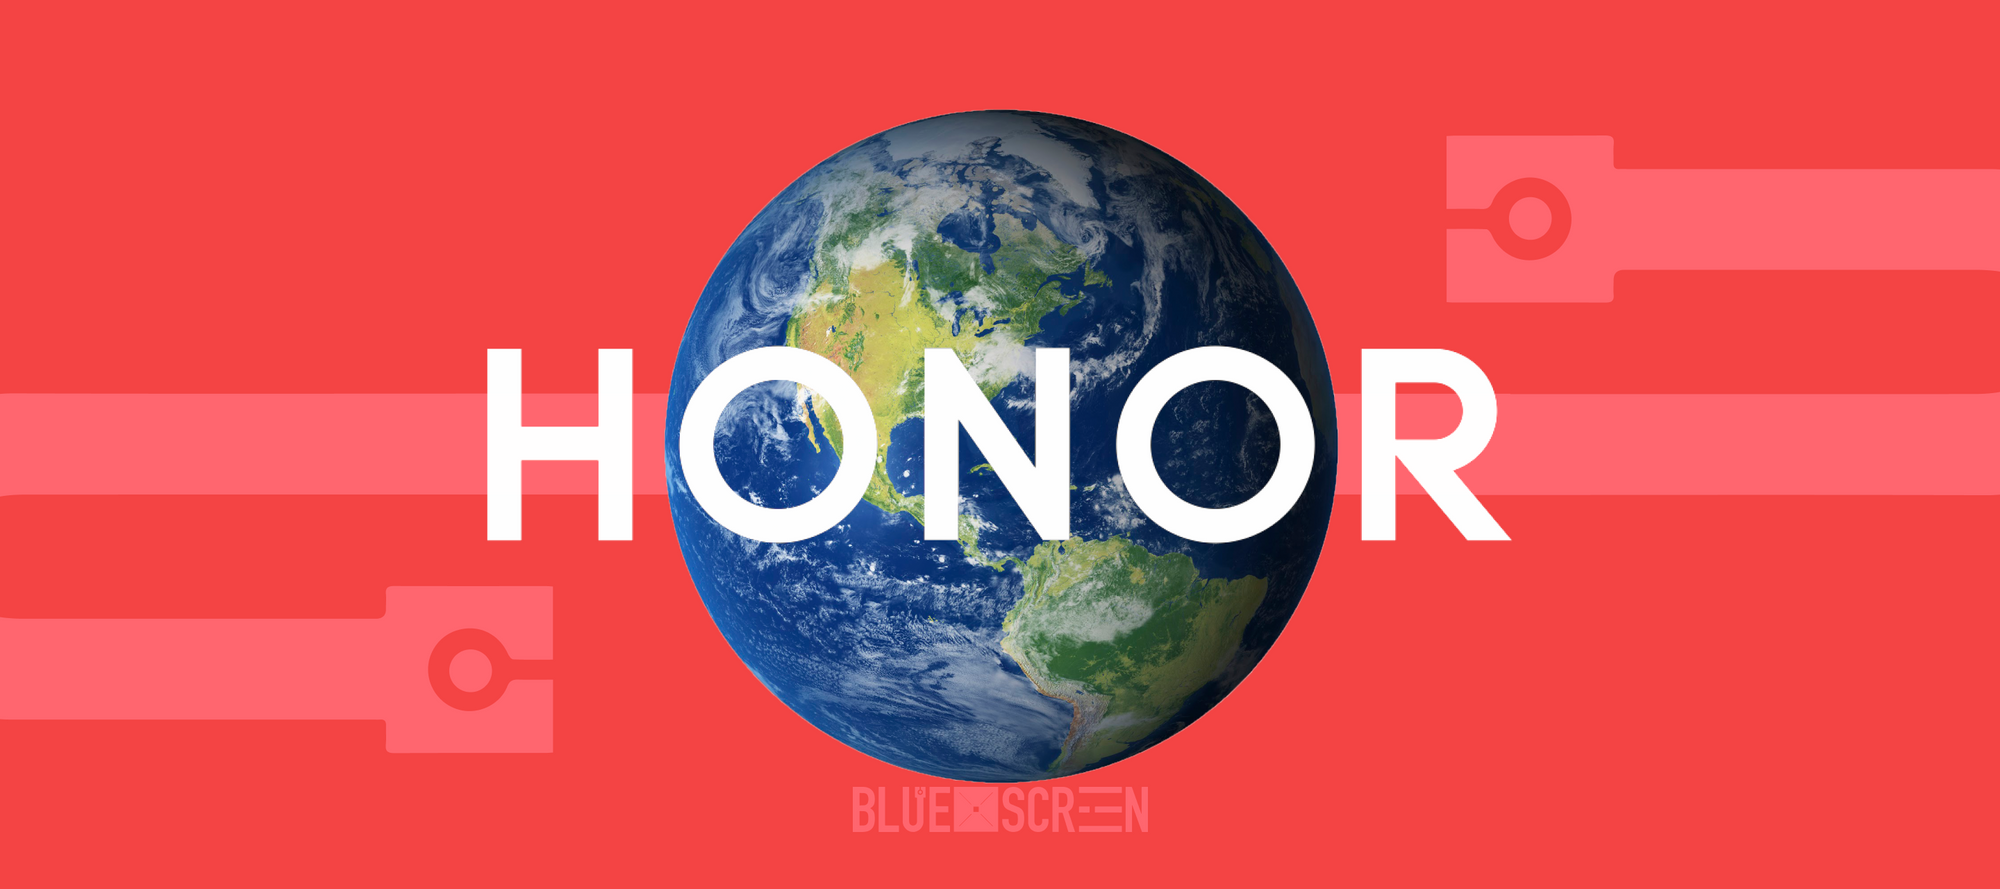 Honor обязуется достичь углеродной нейтральности к 2045 году